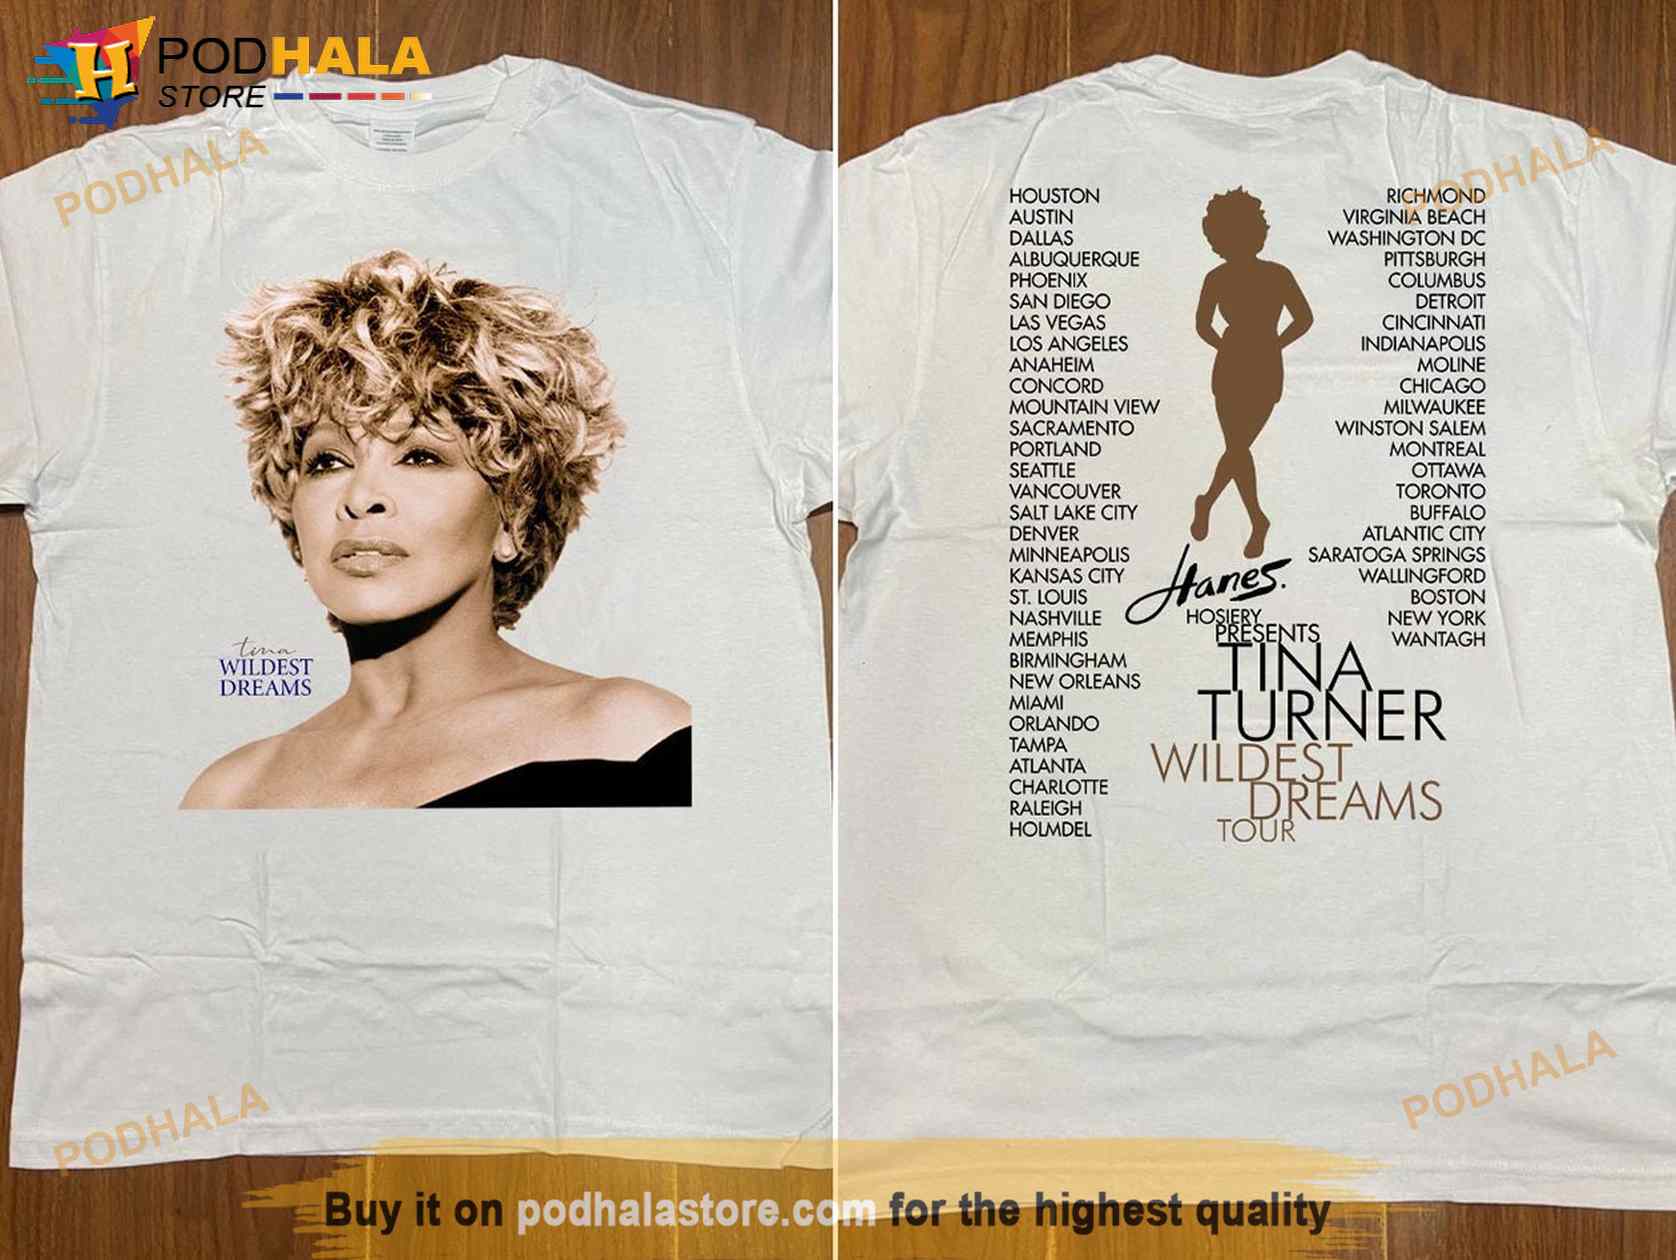 Tina Turner Wildest Dreams Tour 1996 Shirt, Tina Turner Tour '96 T